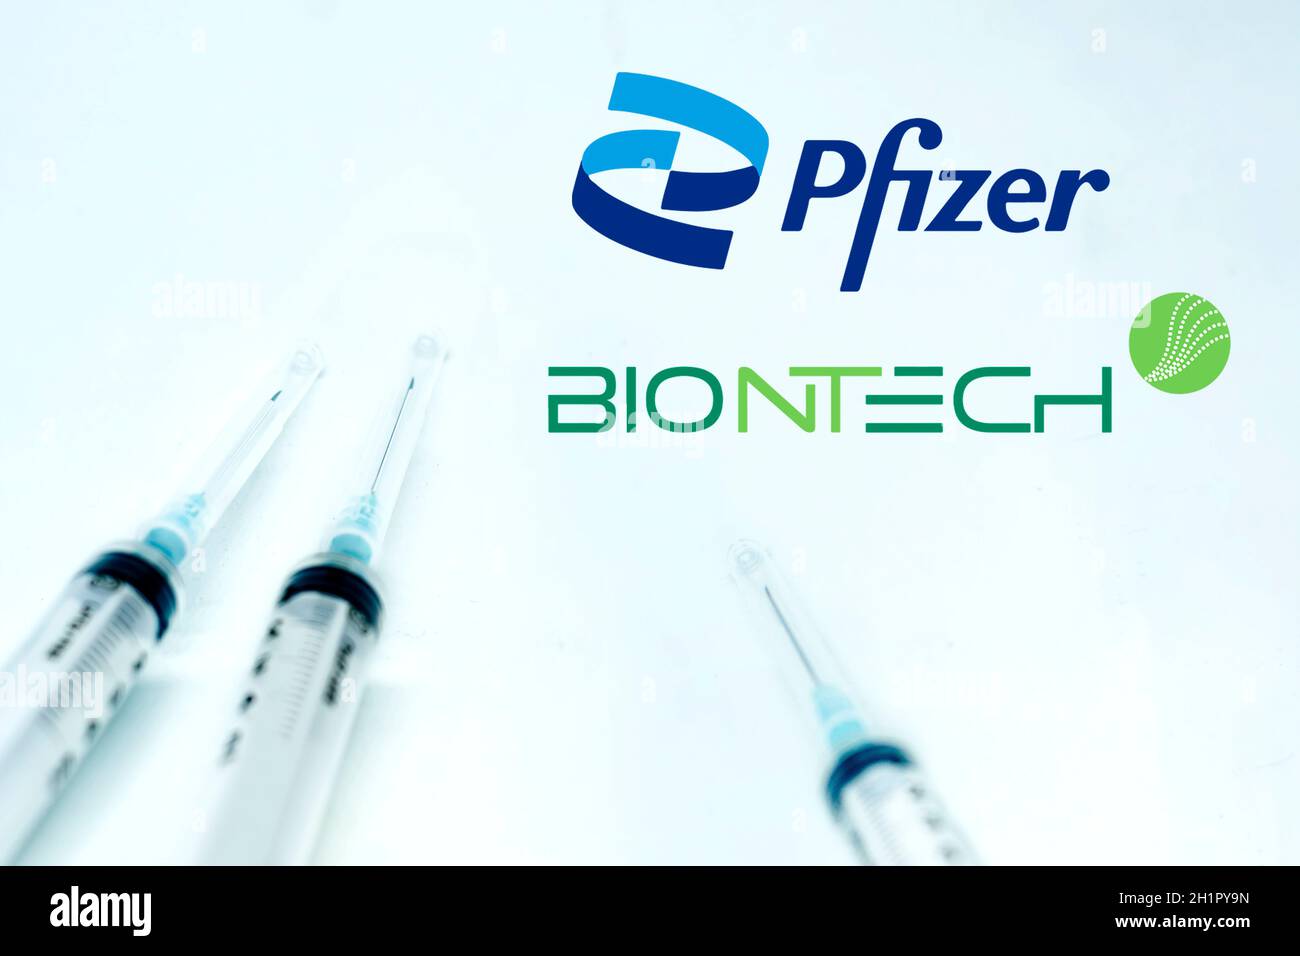 New York USA, 10 febbraio 2021: Tre siringhe accanto al logo Pfizer BioNTech isolate su sfondo bianco. Salute e prevenzione. Pfizer Biontech Foto Stock